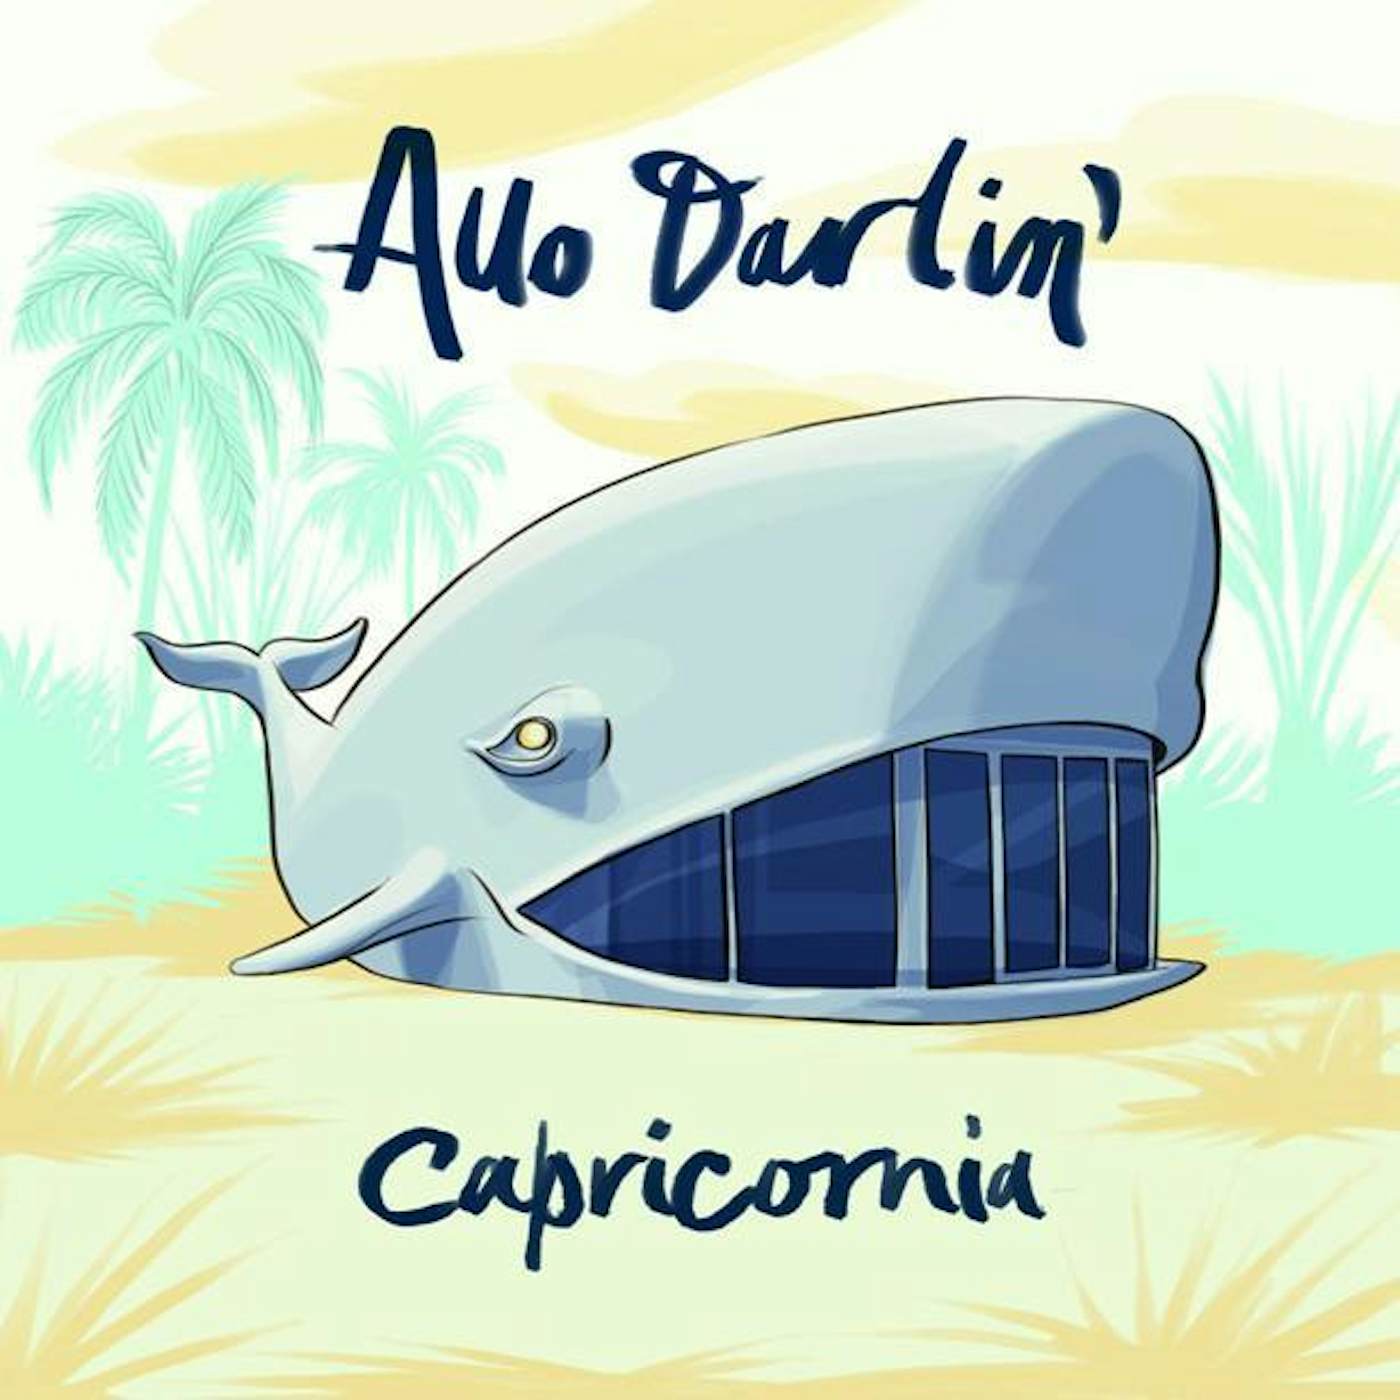 Allo Darlin' 'Capricornia' Vinyl 7" Vinyl Record